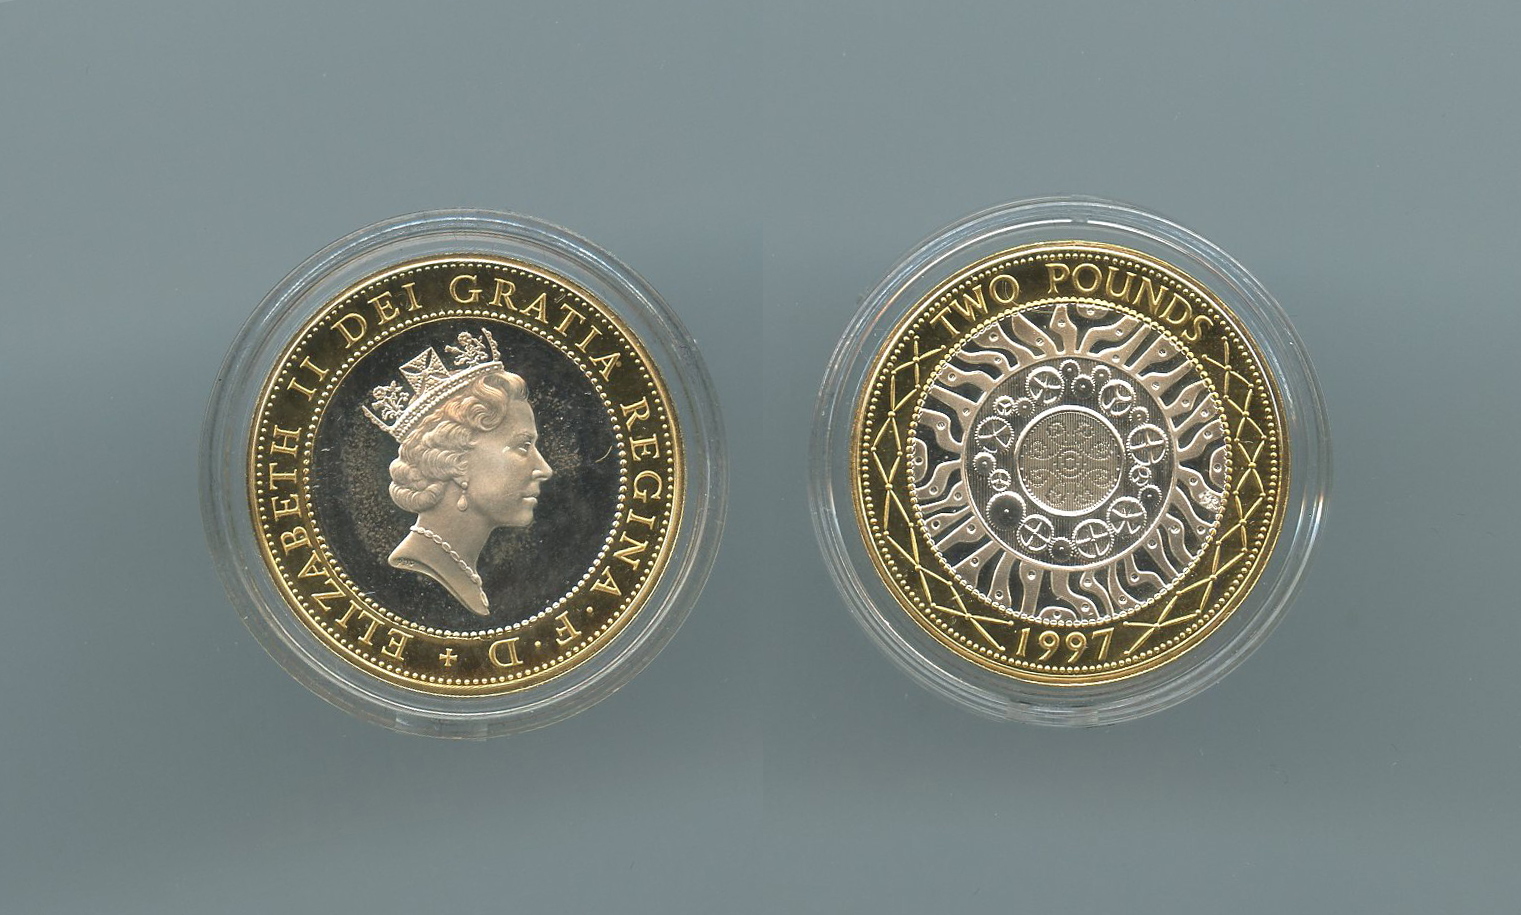 REGNO UNITO, Elizabeth II, 2 Pounds 1997